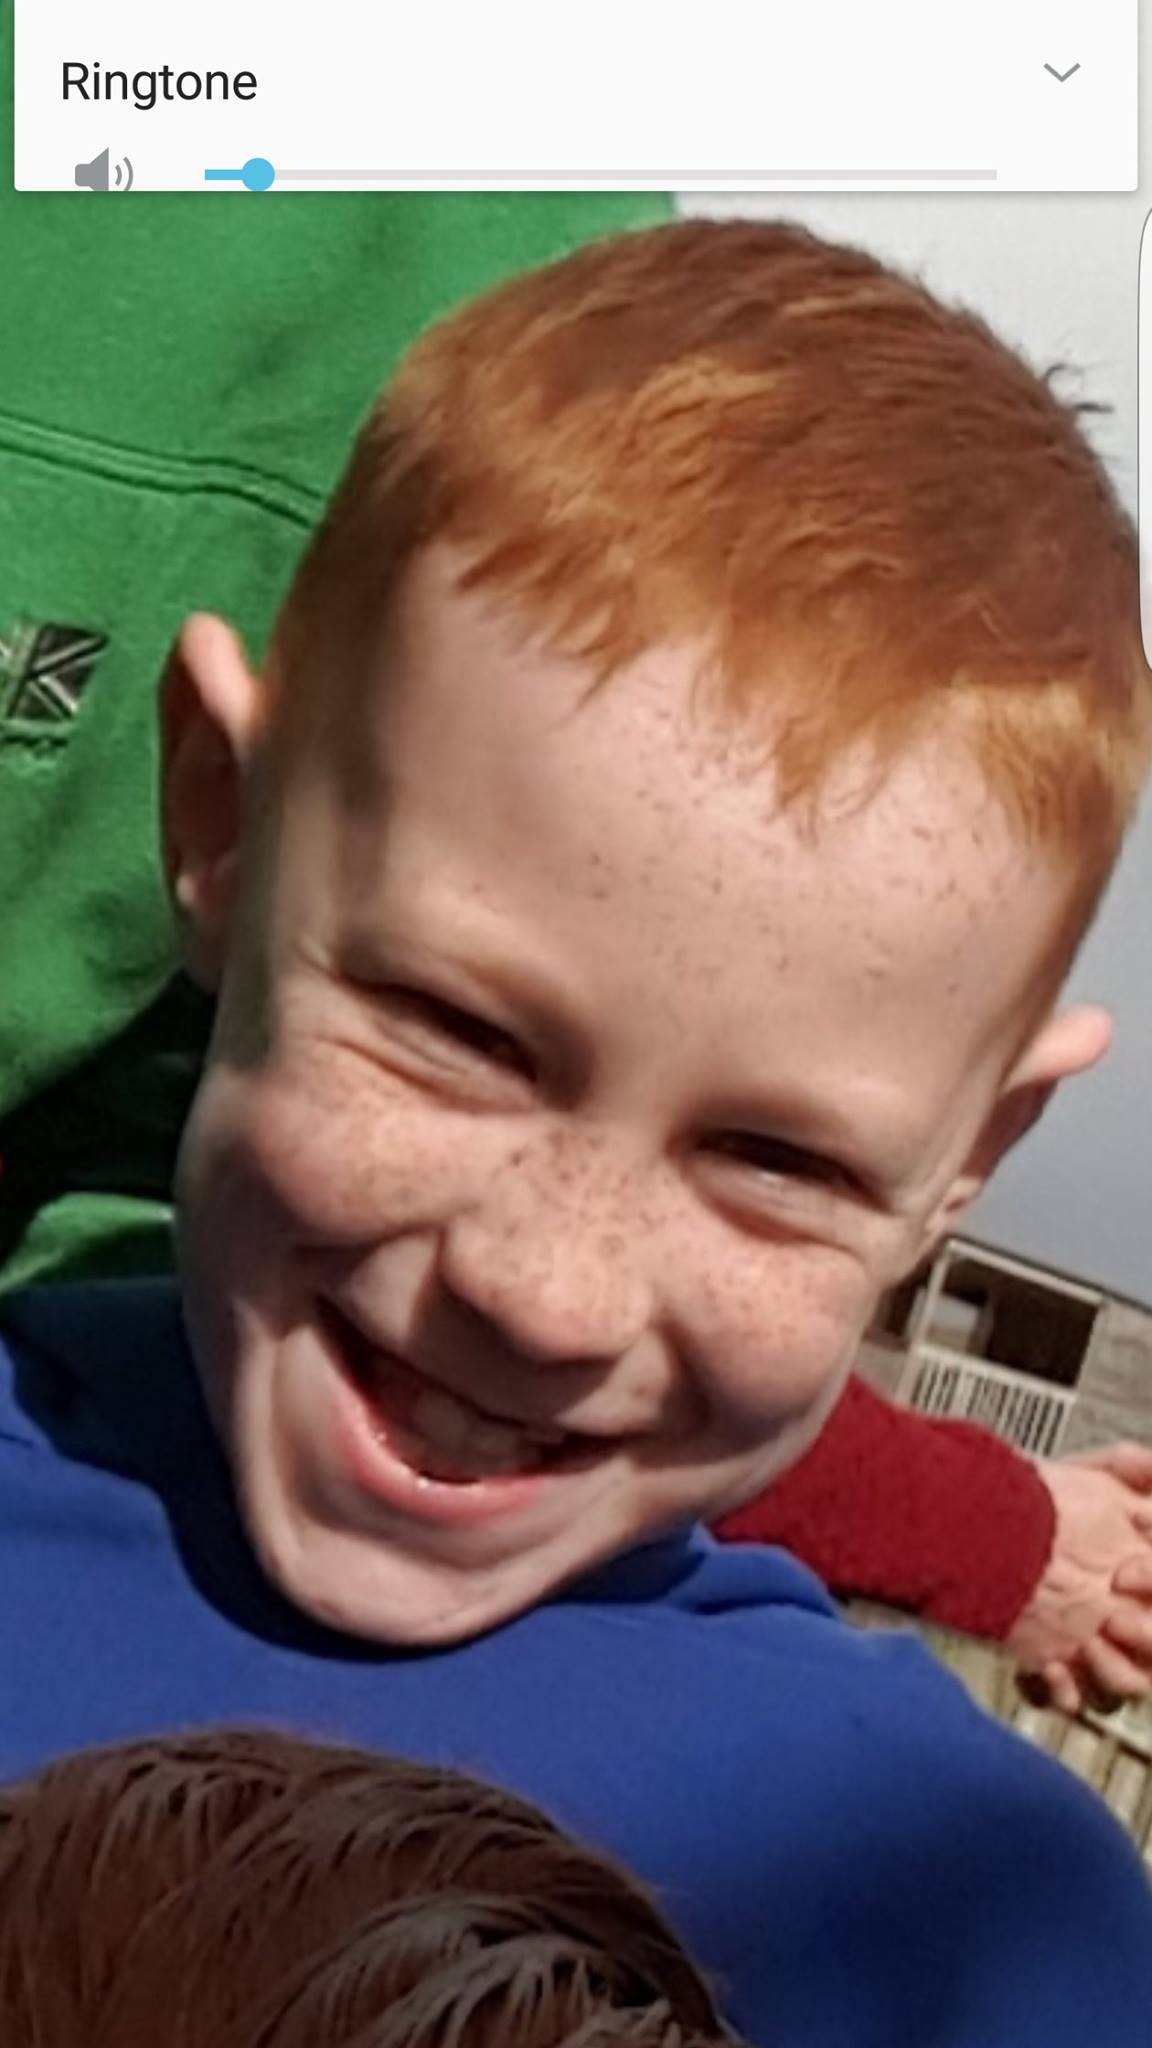 UPDATED: Lochmaben schoolboy found